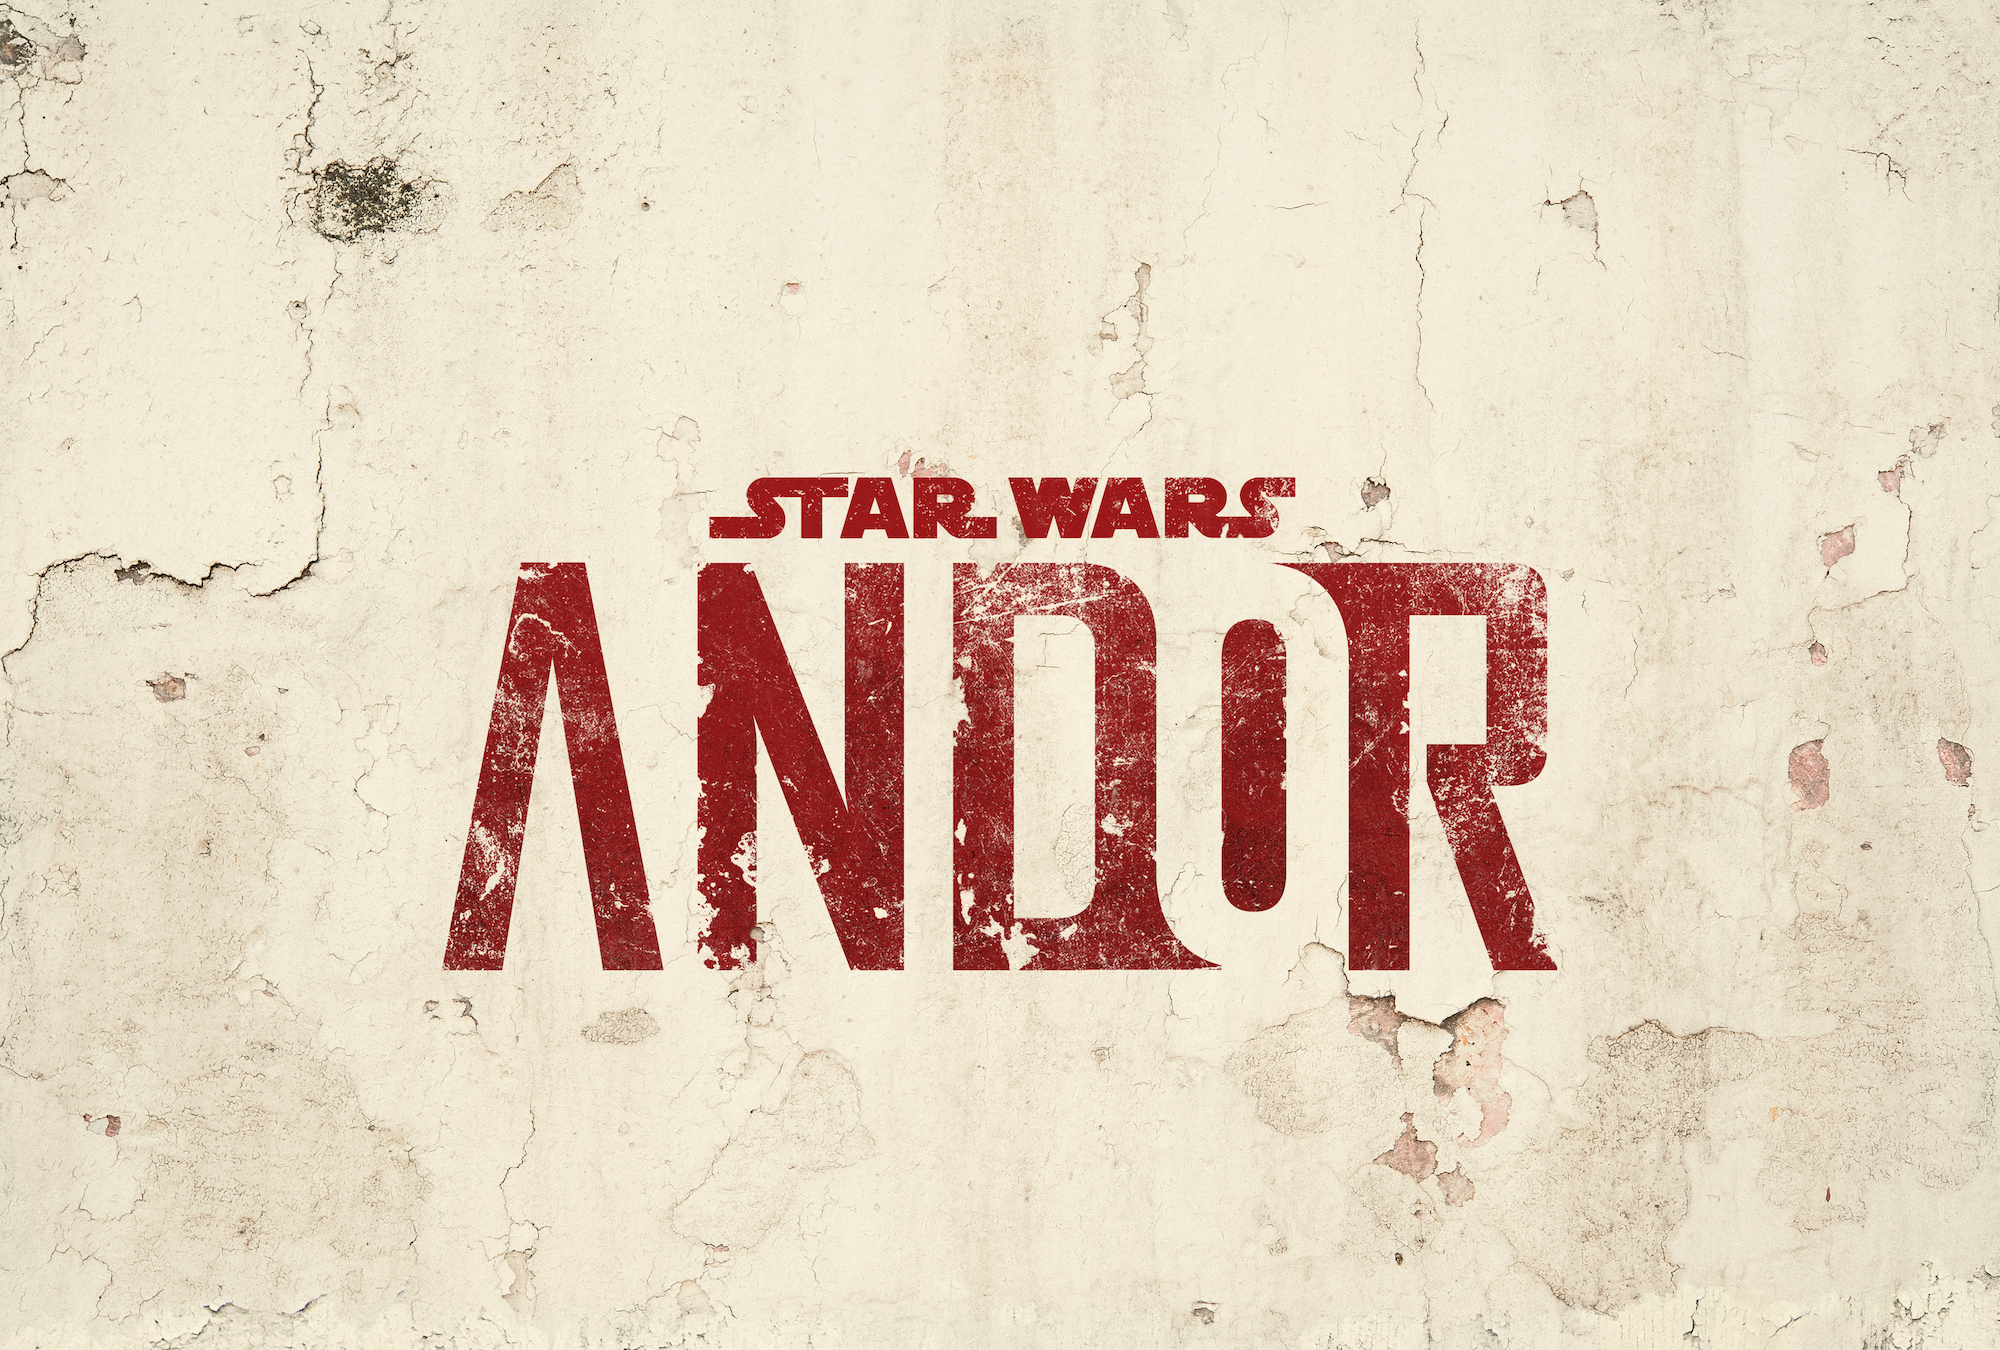 Série Andor revela como surgiu a aliança rebelde em Star Wars a uma  escala épica